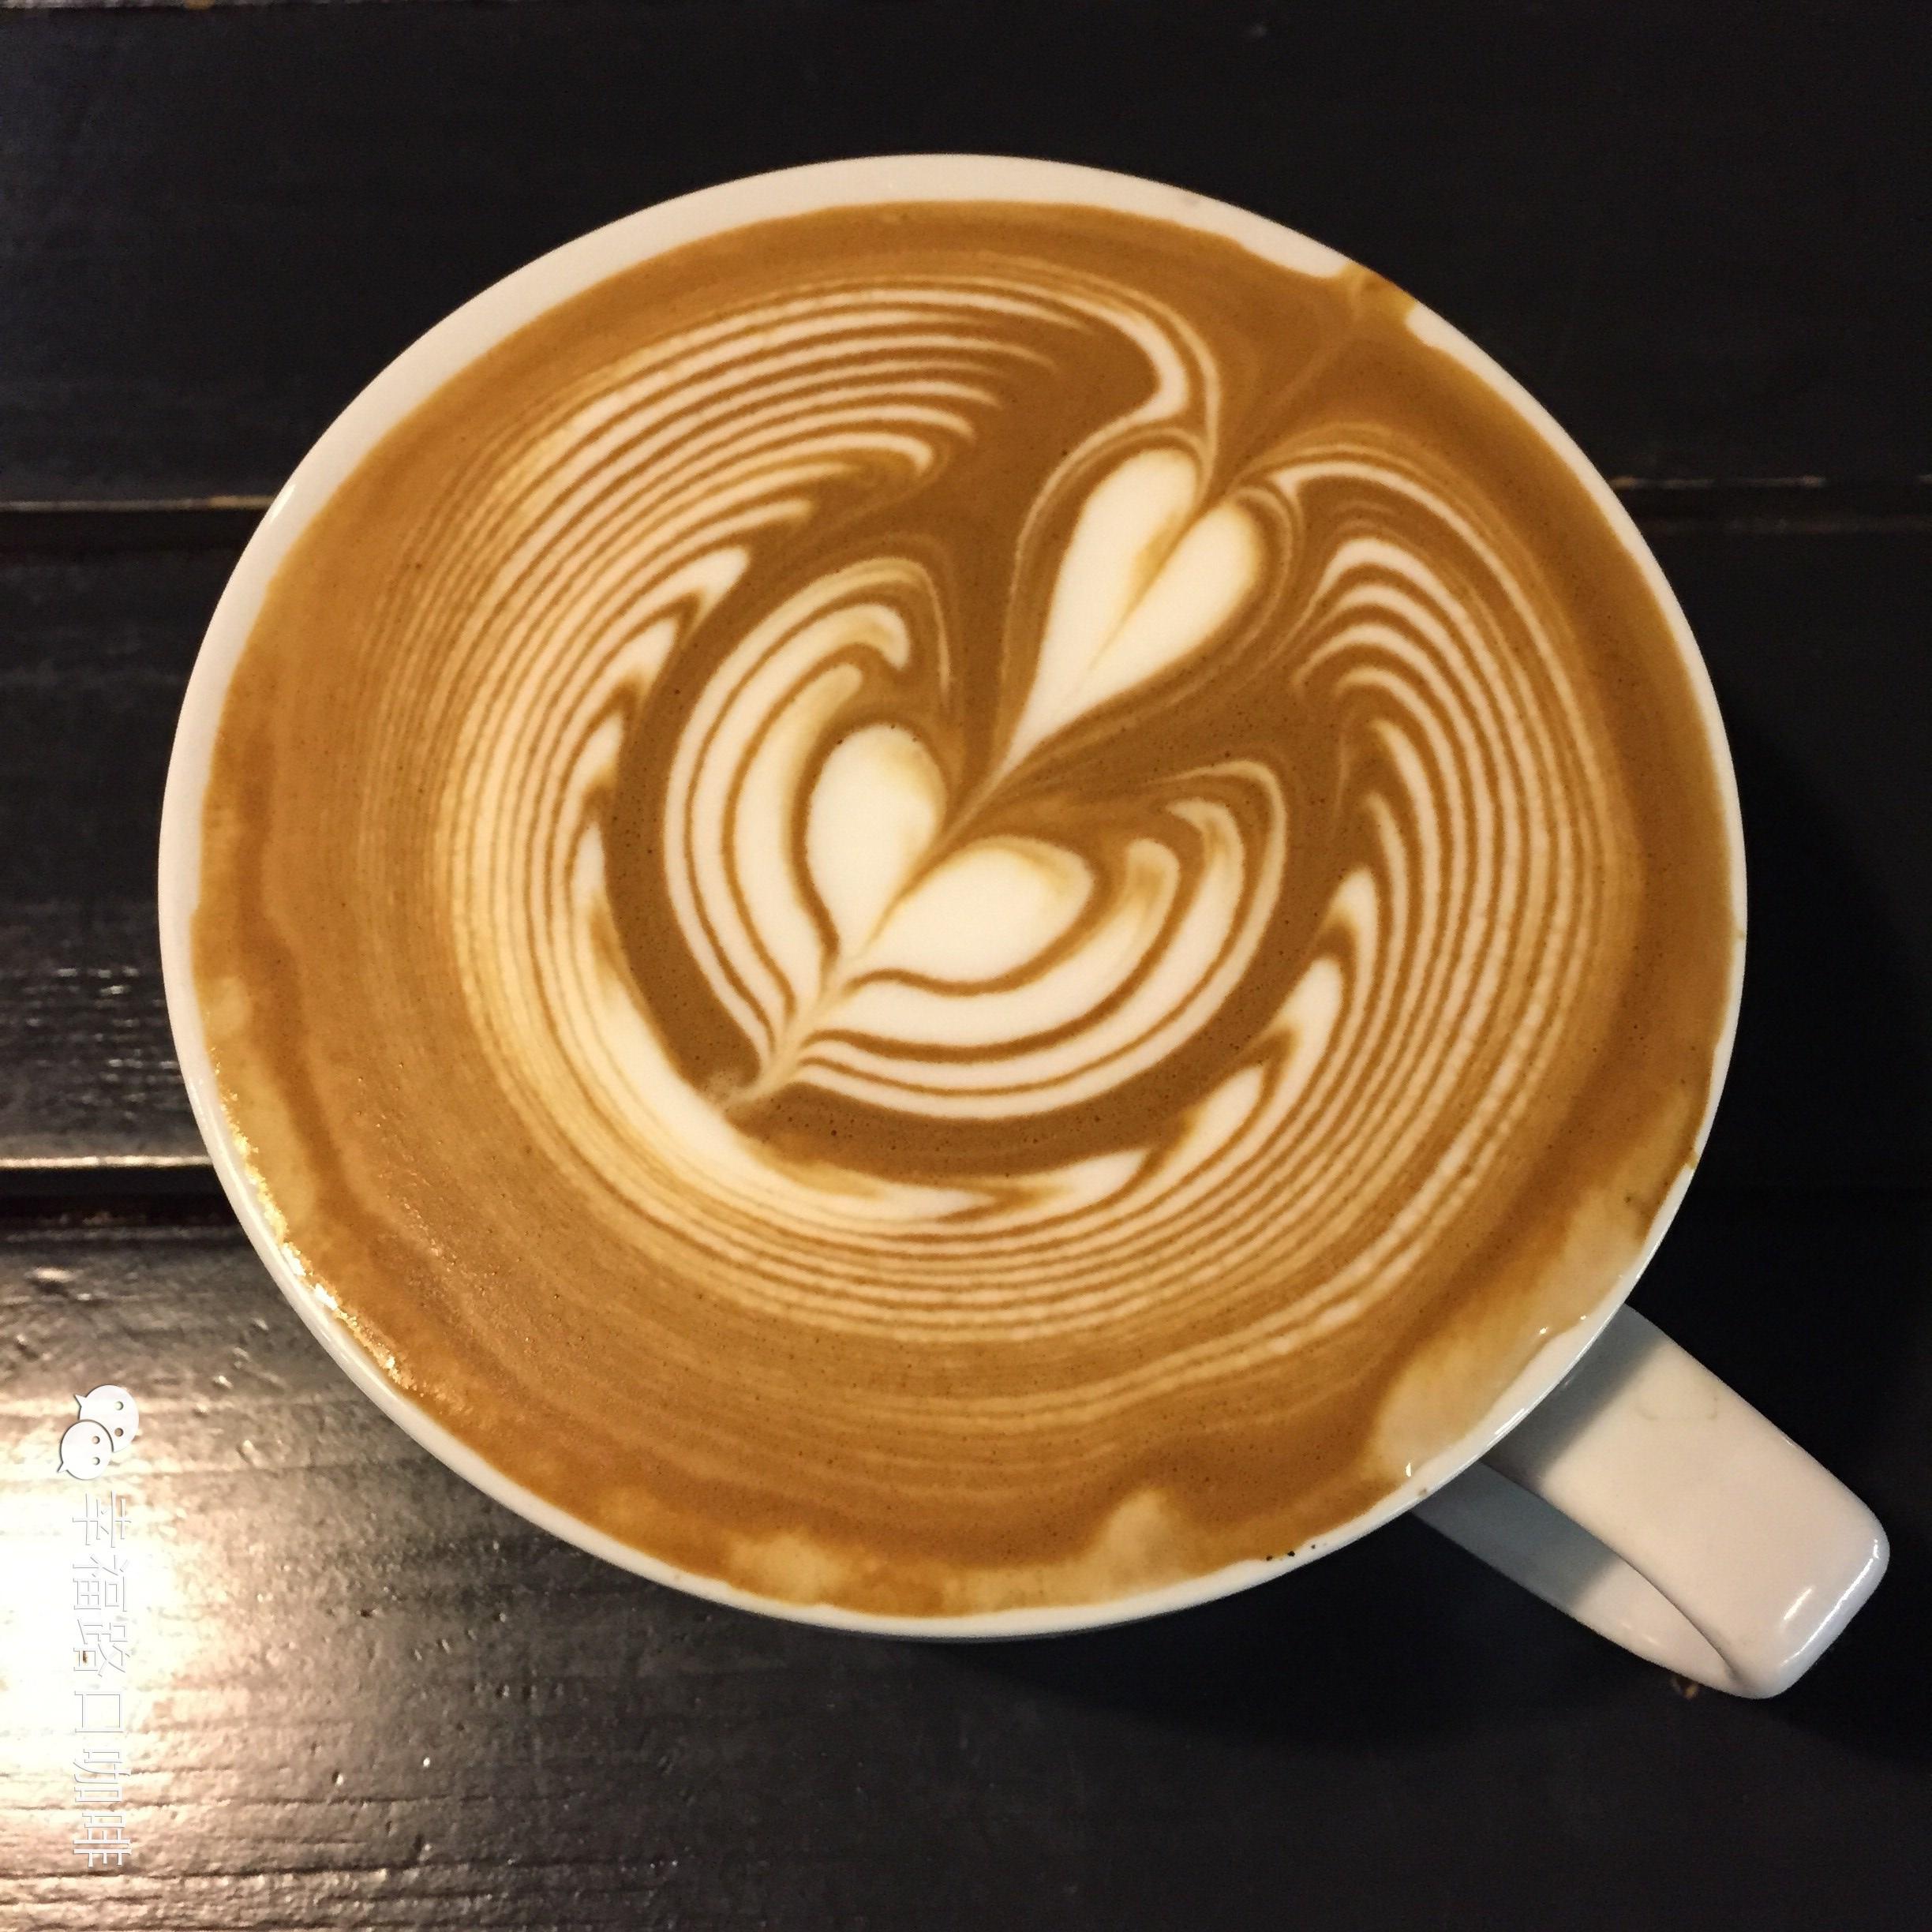 关于咖啡拉花艺术(LatteArt)